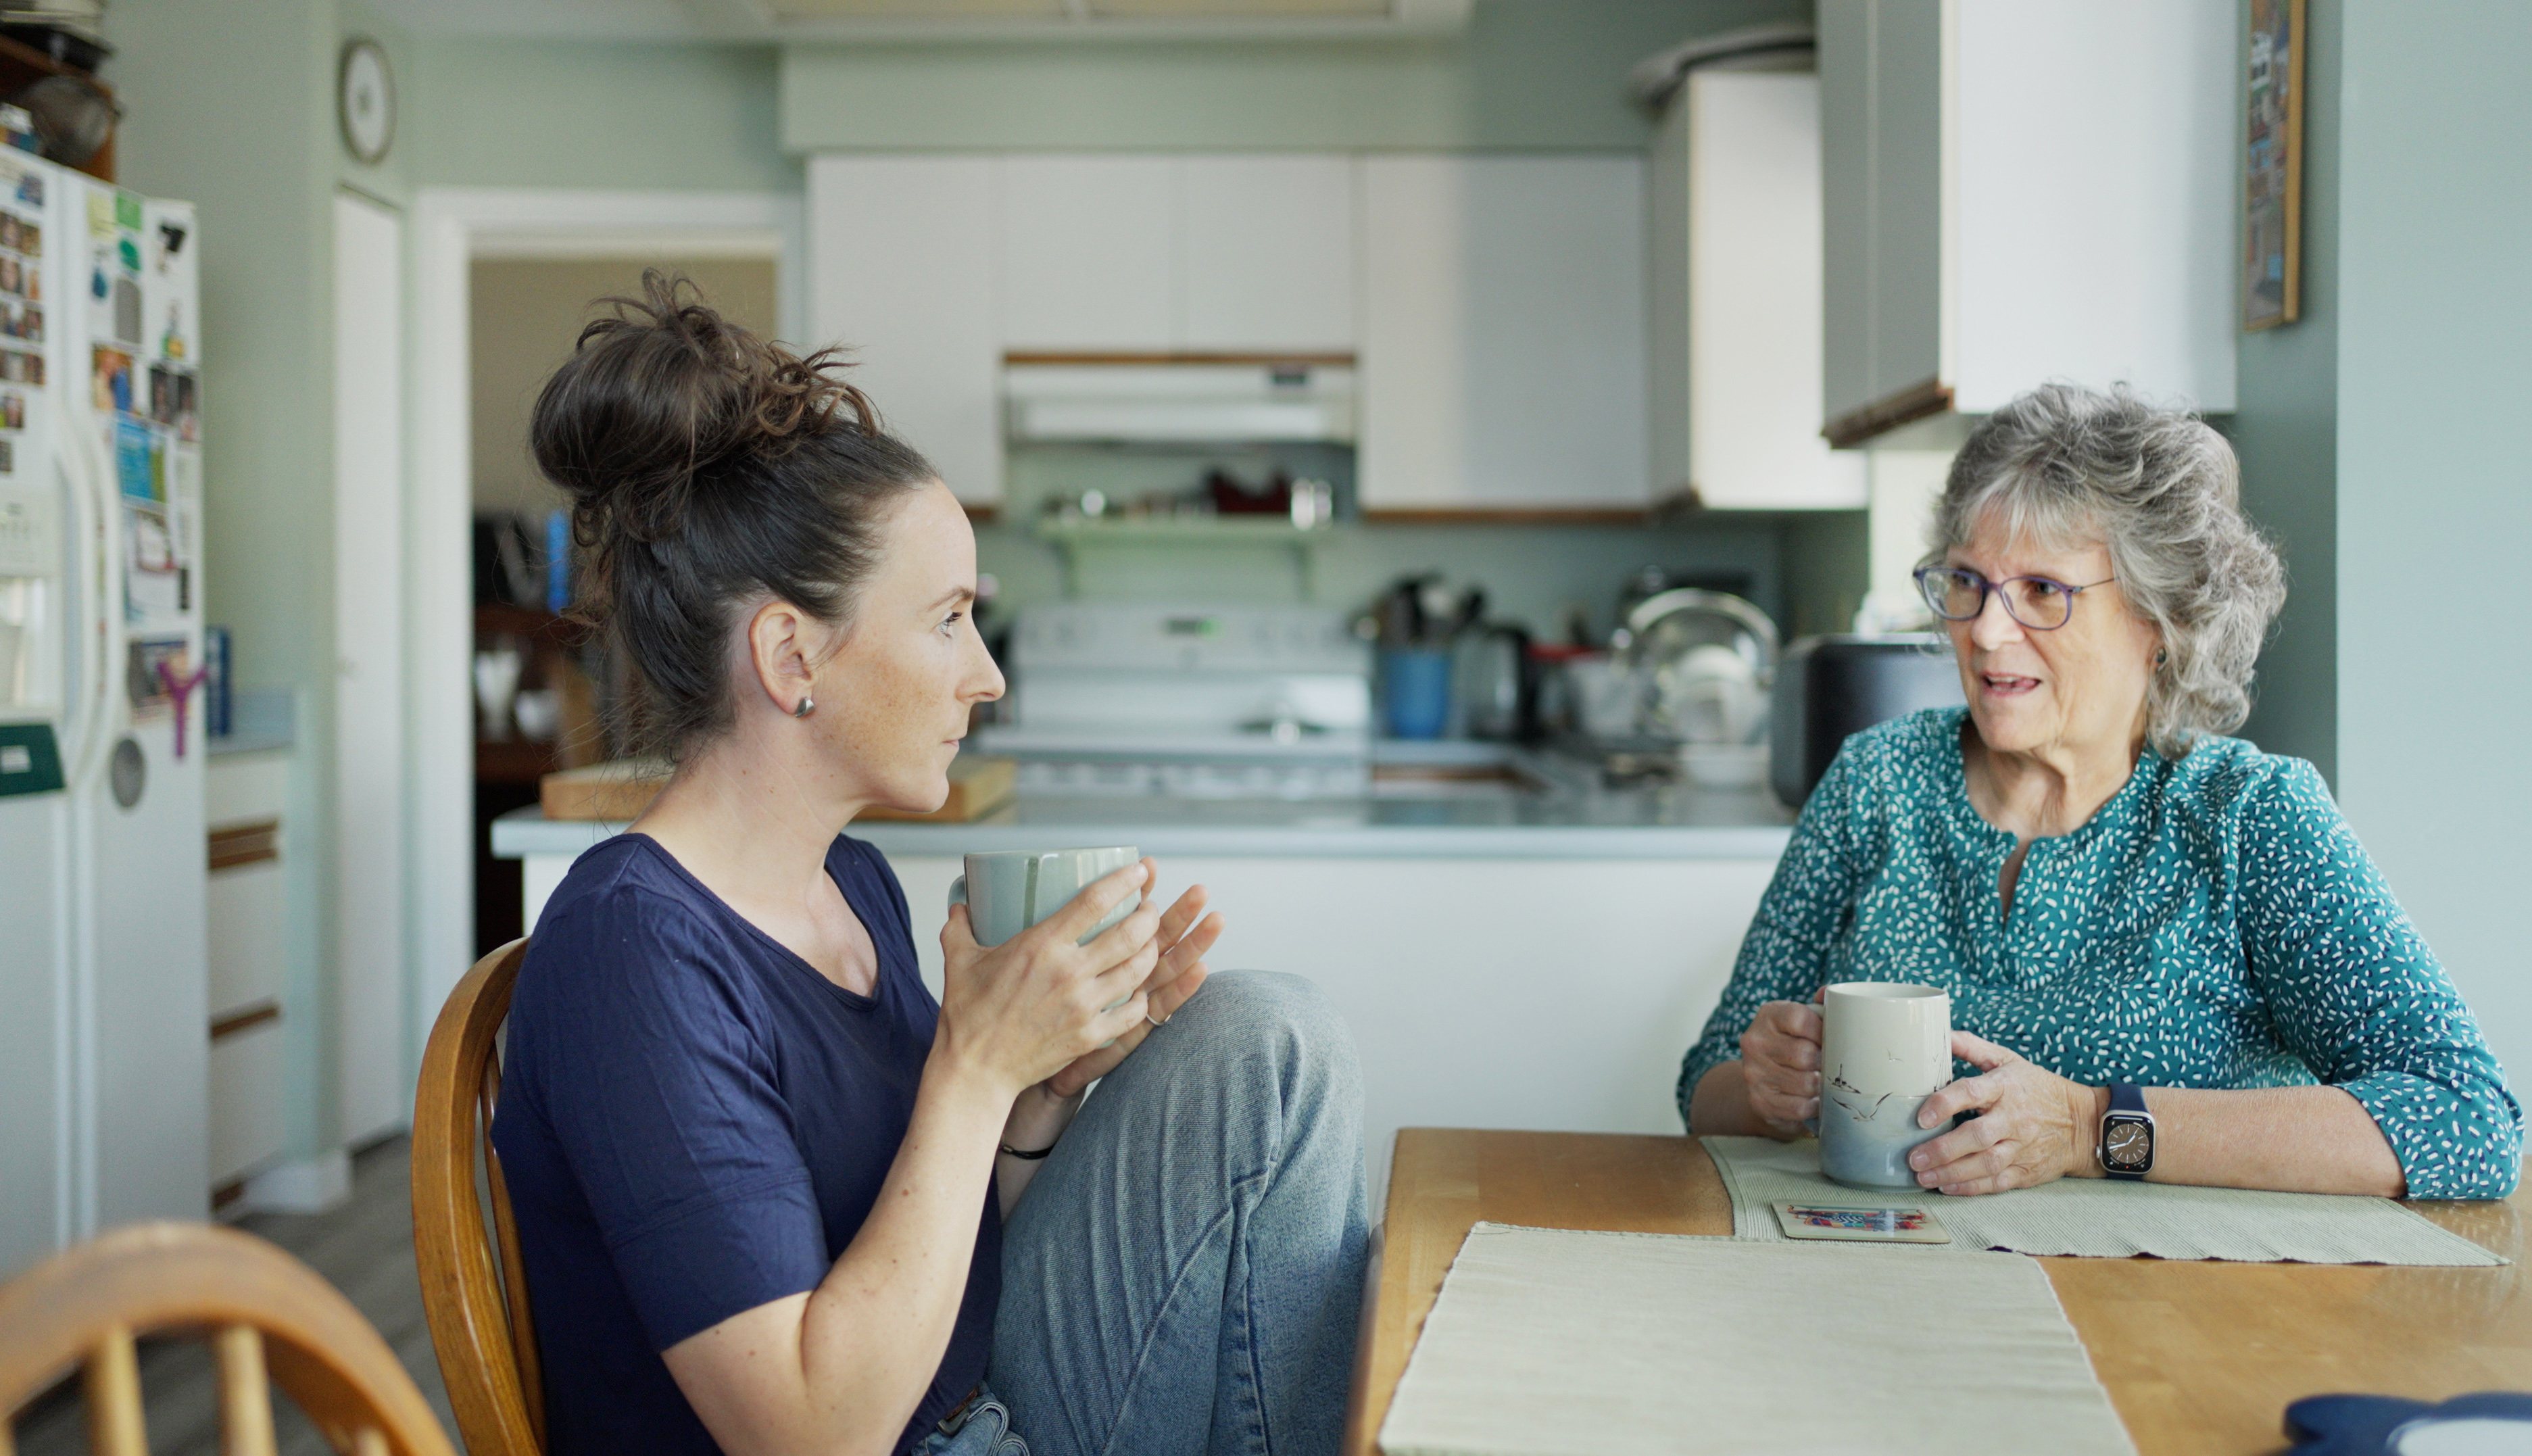 Joven charlando con su madre tomando el té durante una visita | Foto: Getty Images